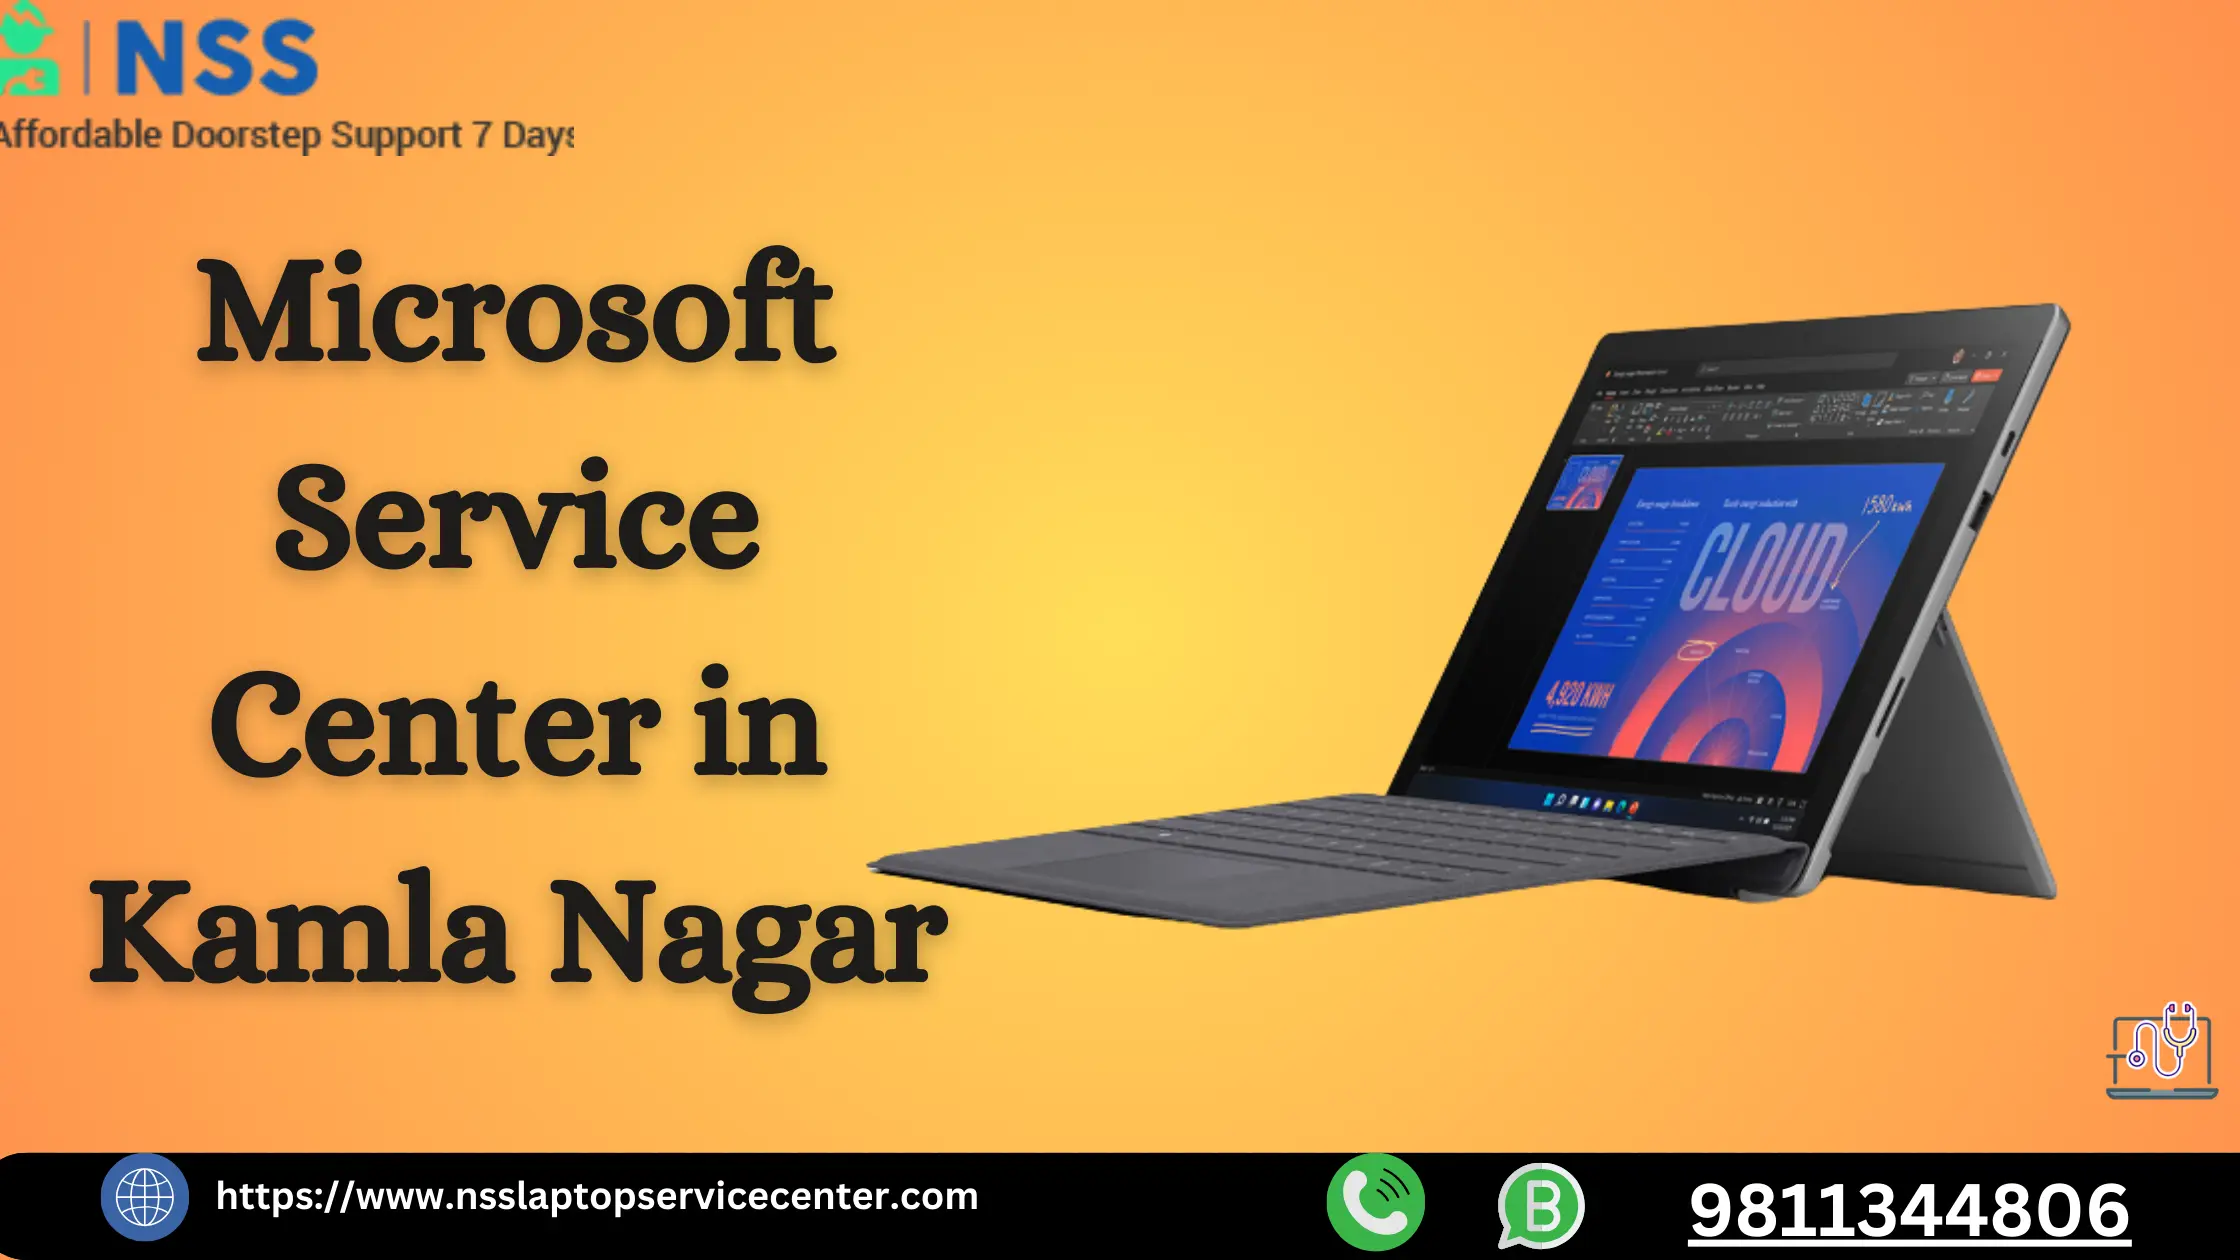 Microsoft Service Center in Kamla Nagar Near Delhi